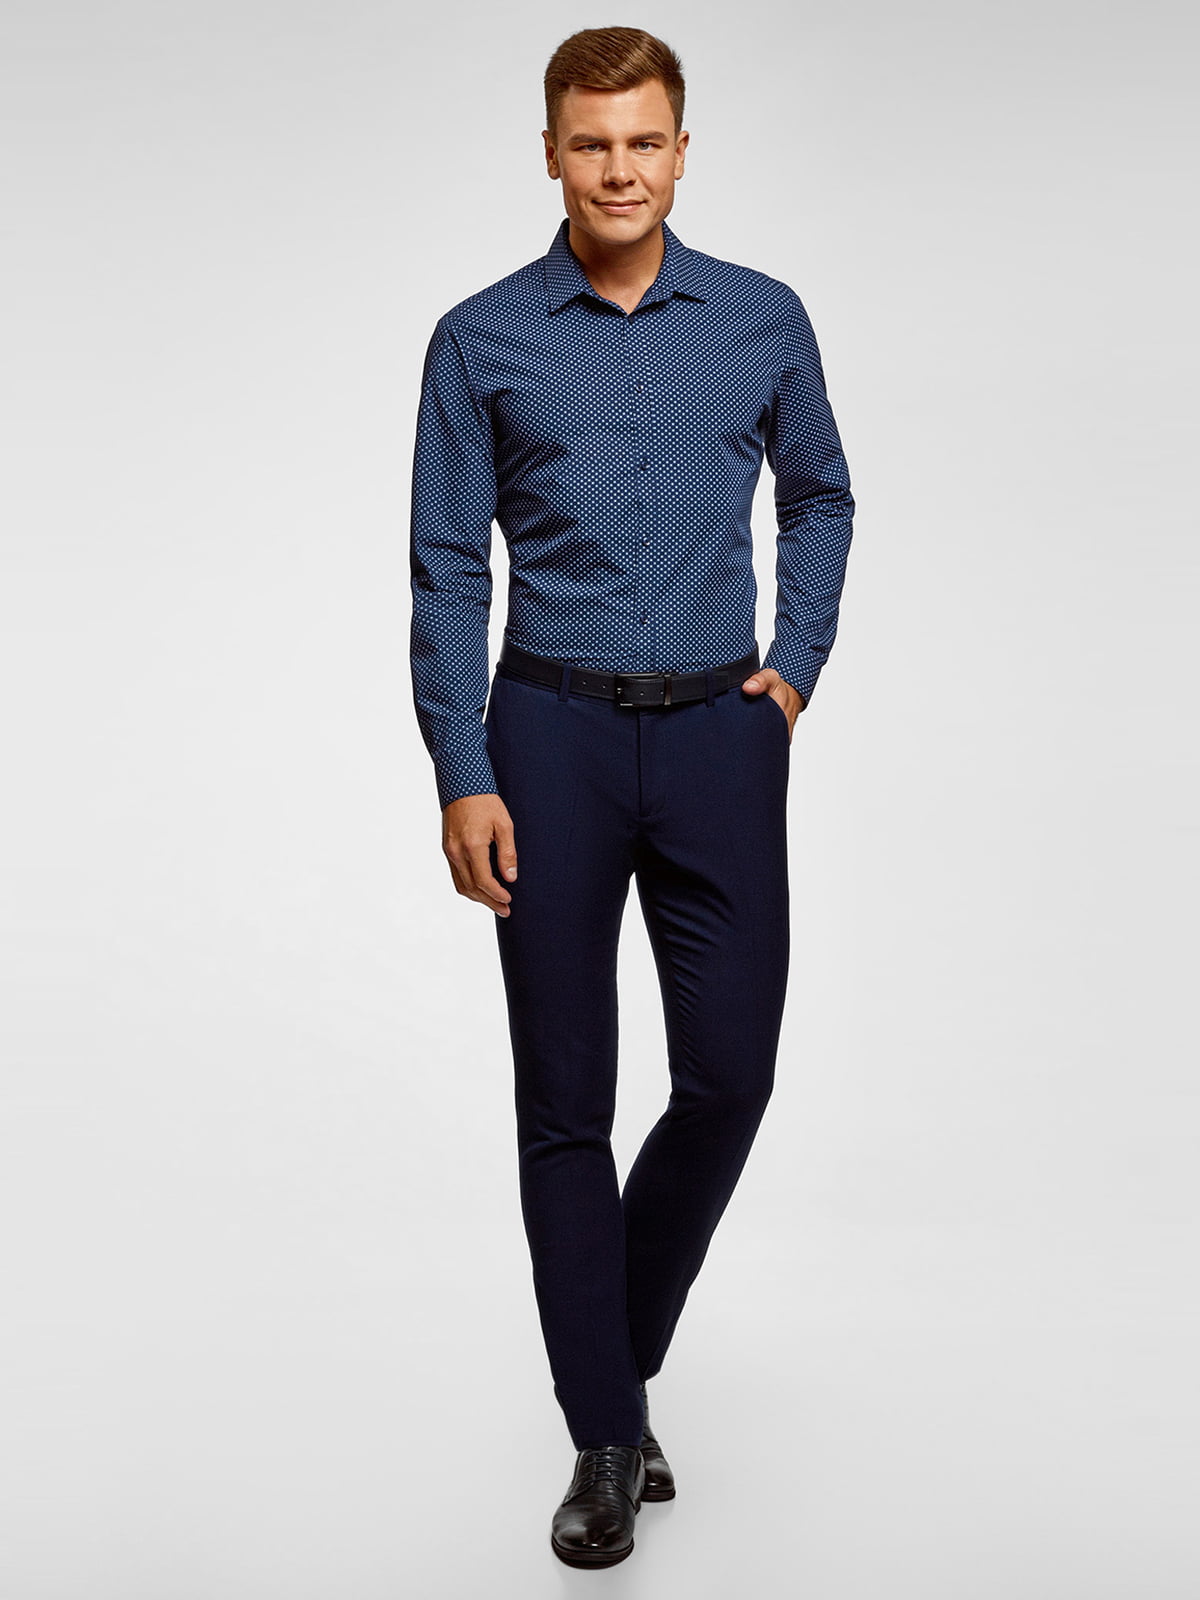 Темно синие брюки рубашка. Черная рубашка с синими брюками. Брюки под рубашку мужские. Темно синяя рубашка. Рубашка к синим брюкам.